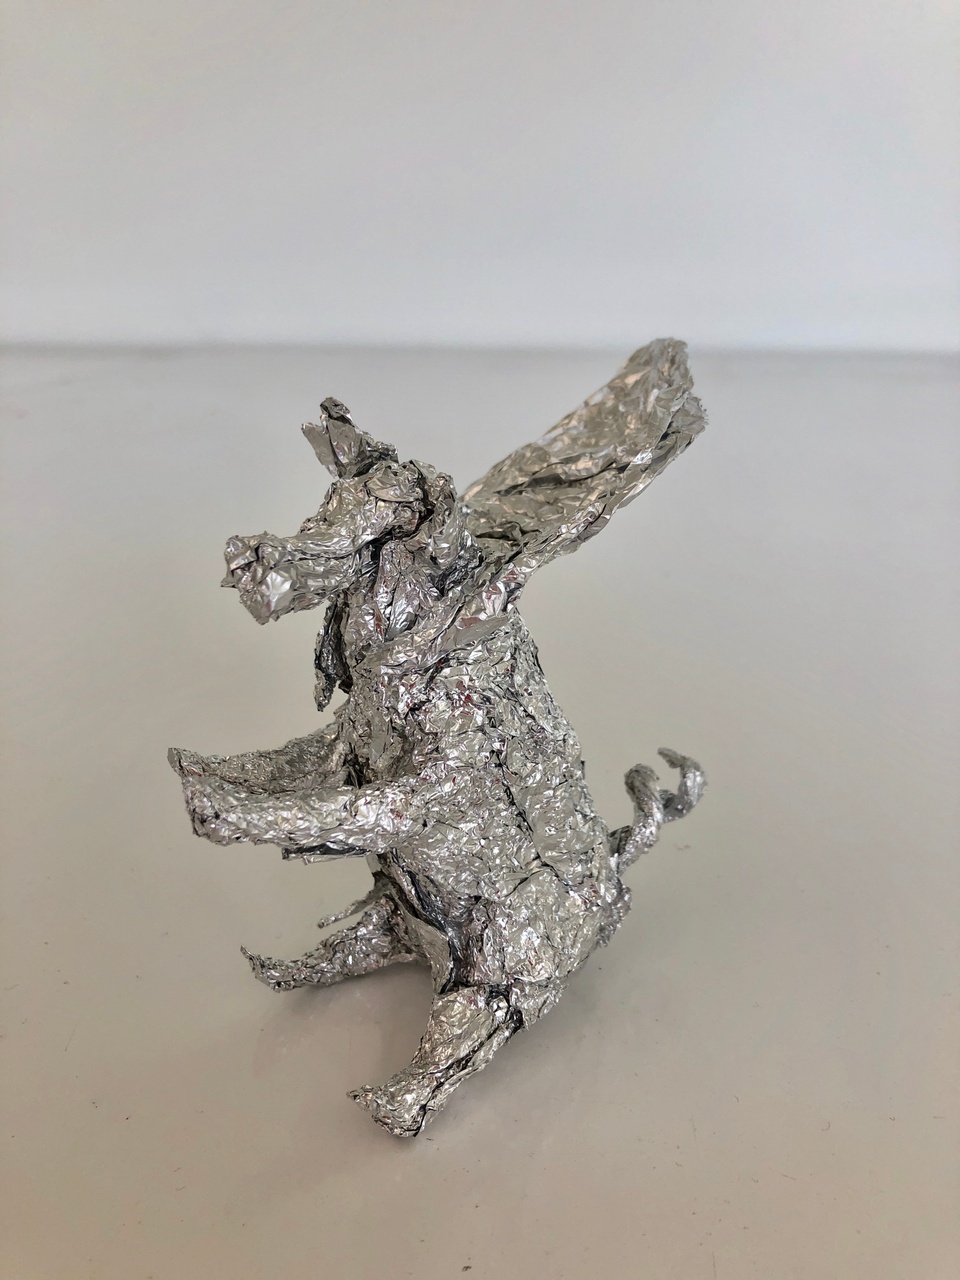 Little sculpture made from aluminum foil